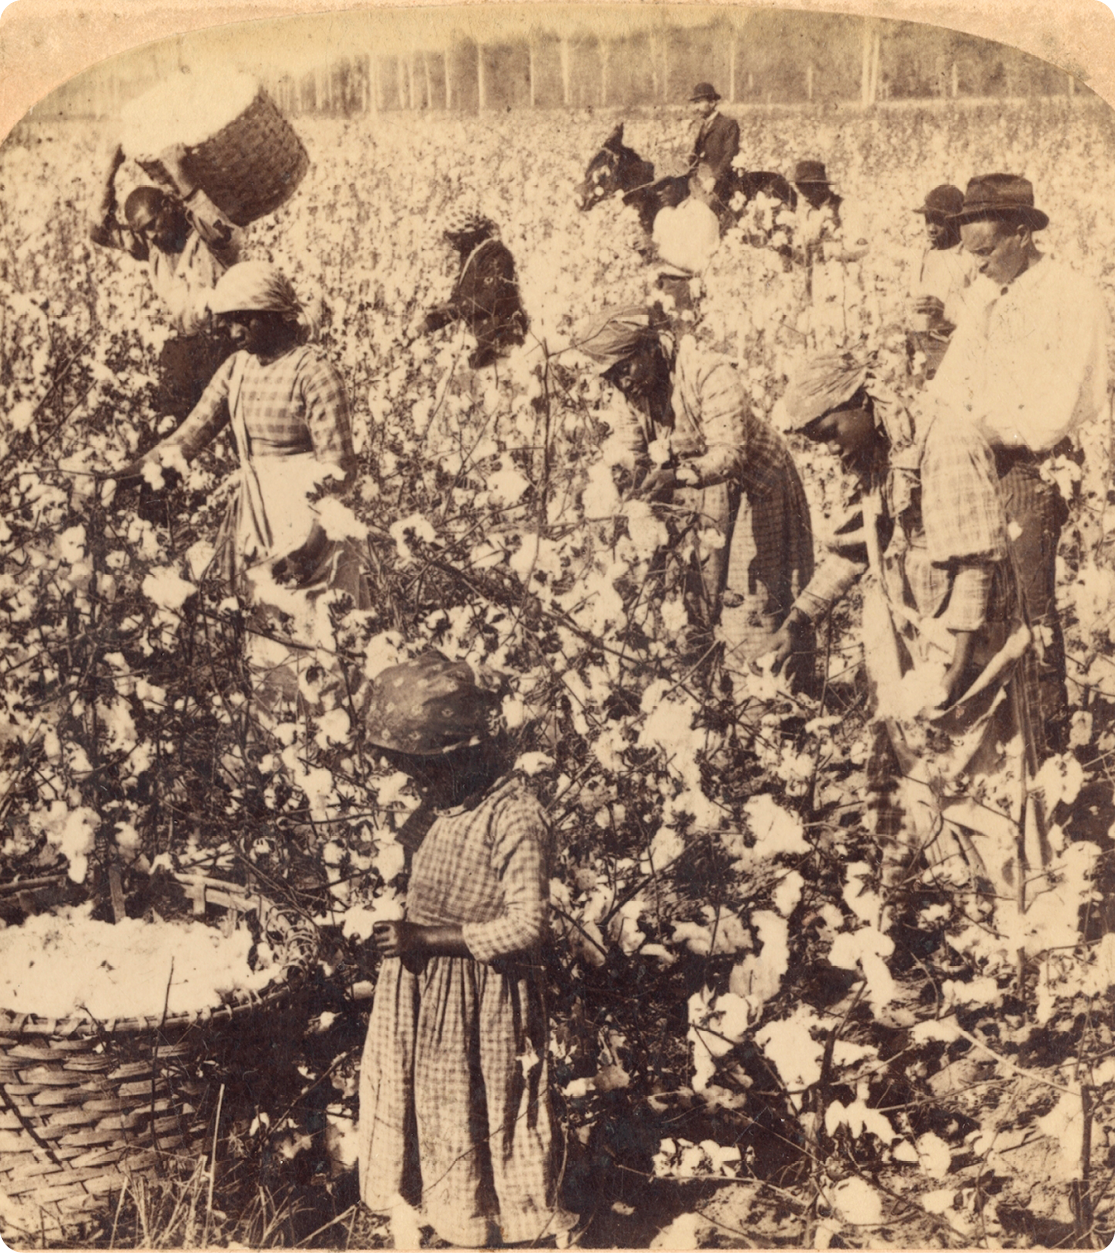 Fotografia em tons de sépia. No primeiro plano, uma criança negra ao lado de um cesto com algodão. No segundo plano, pessoas negras no meio de uma plantação colhendo algodão e, no terceiro plano, um homem de chapéu montando sobre um cavalo.